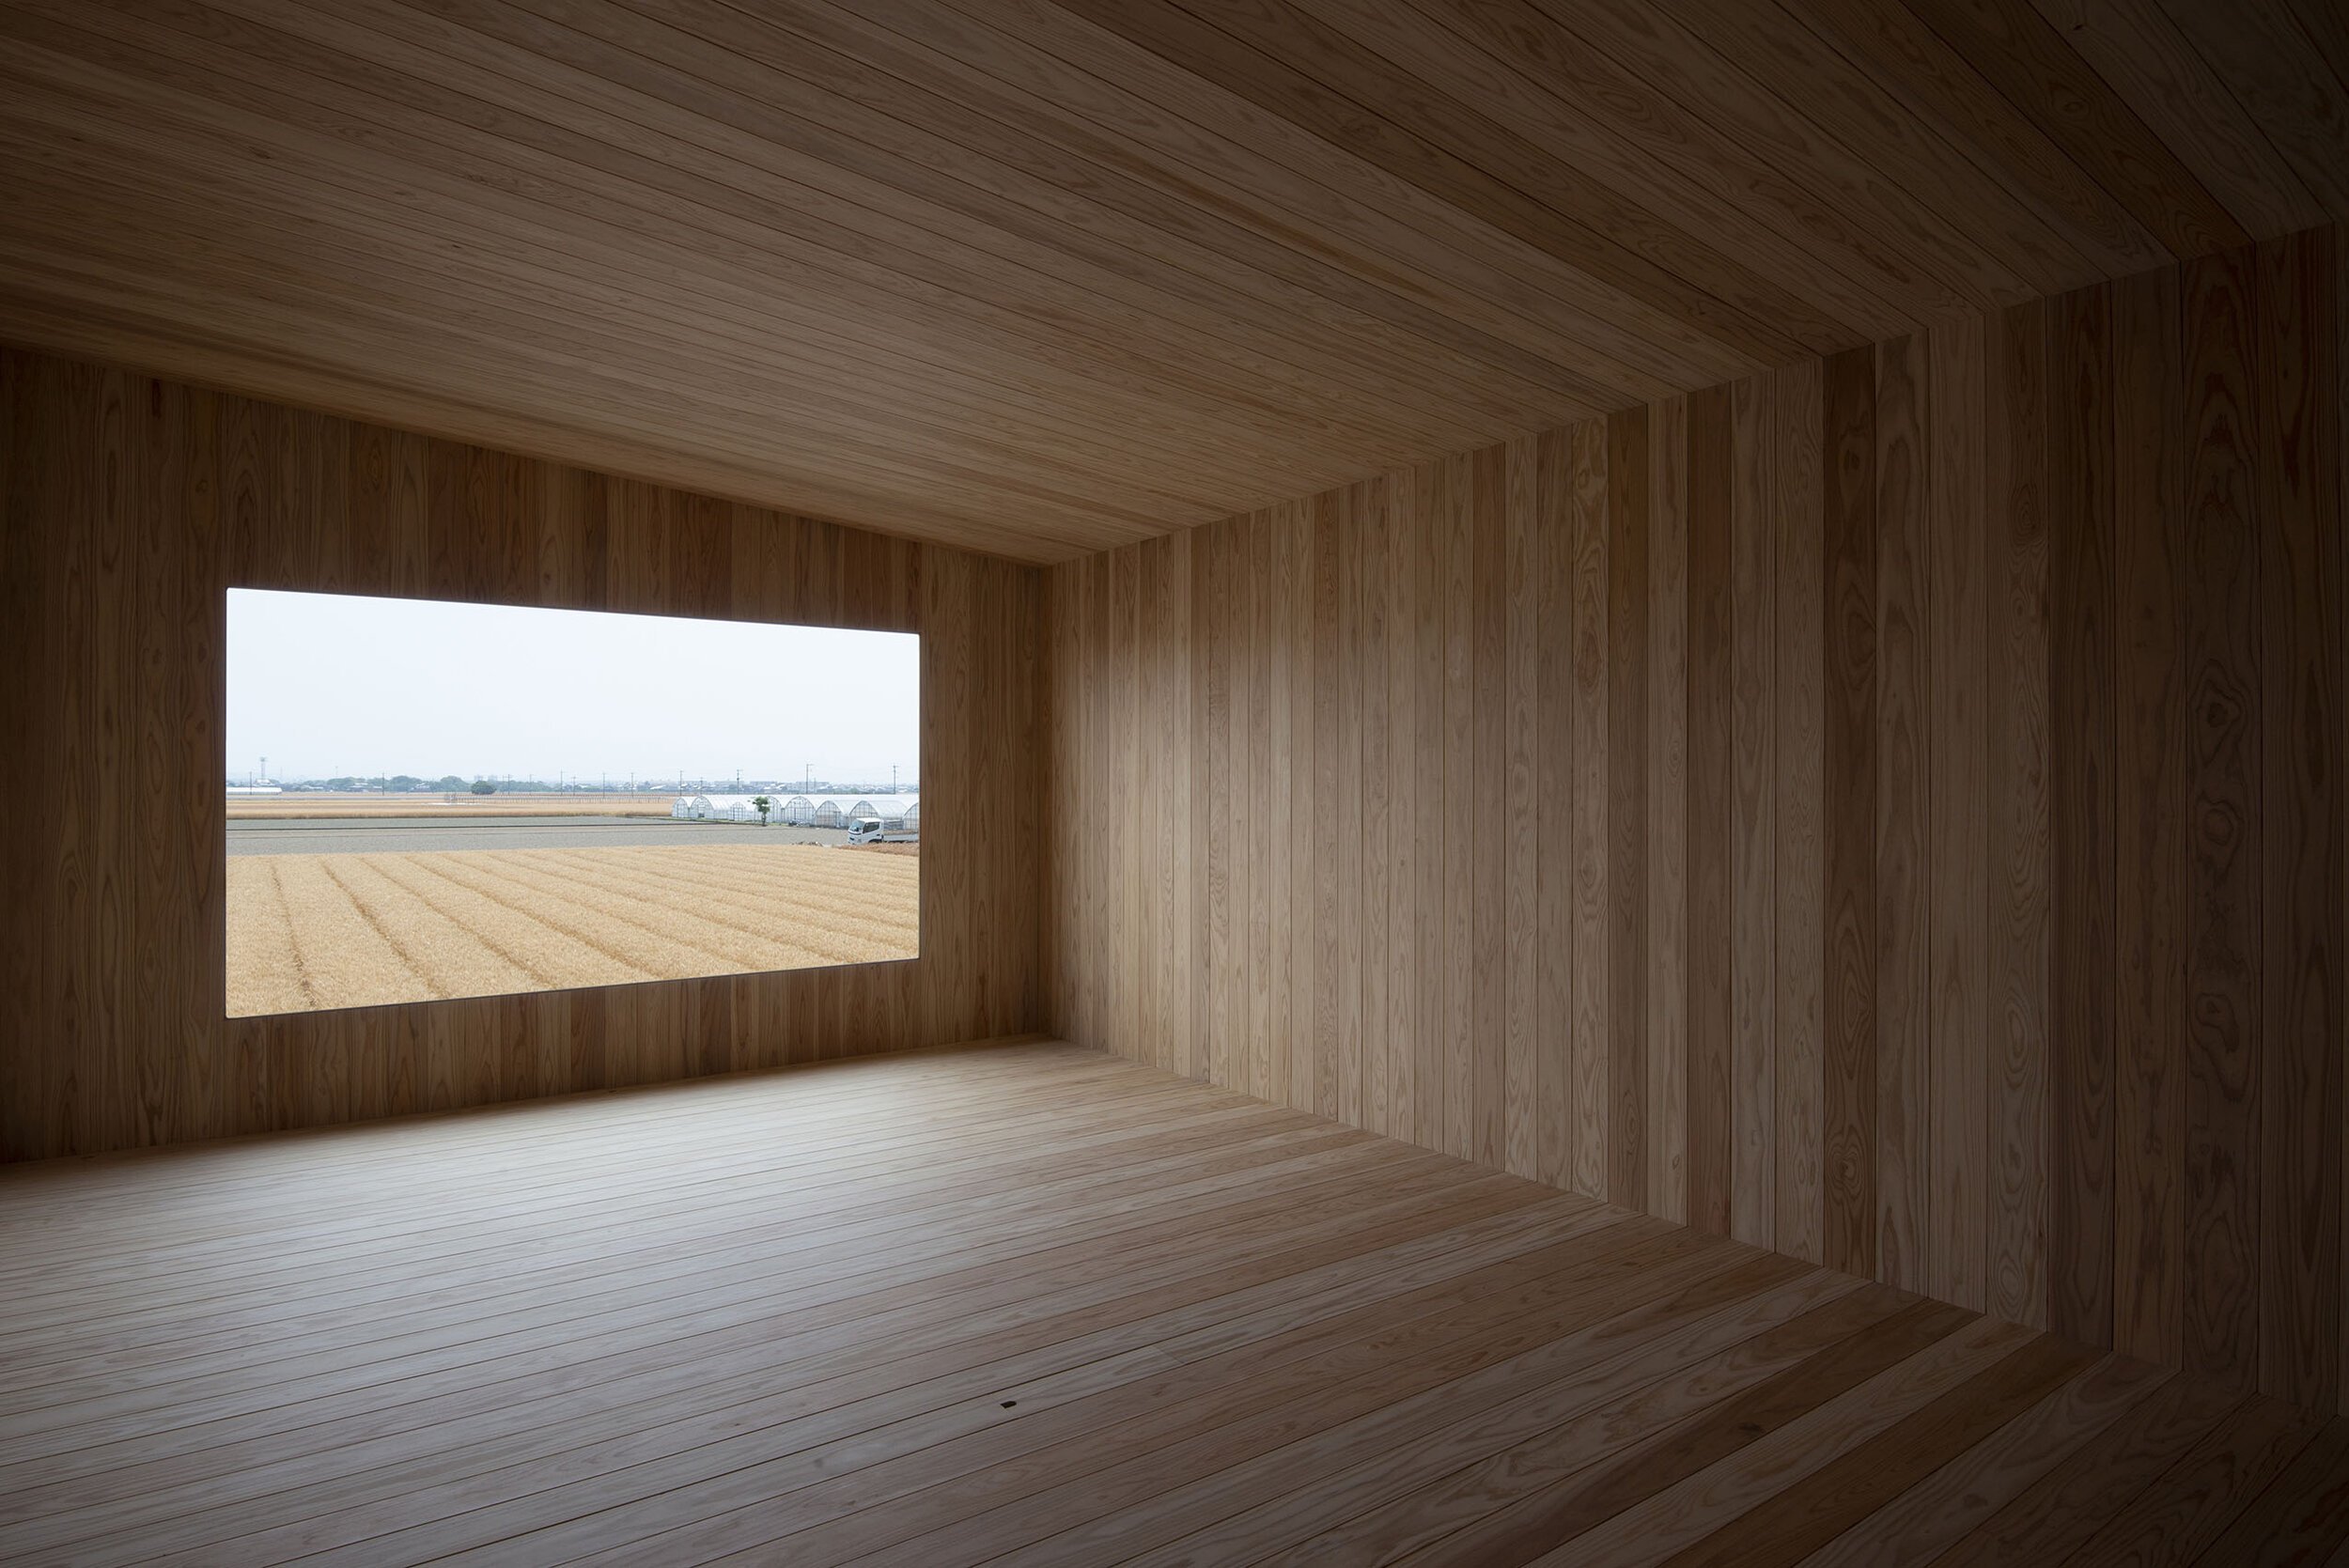  TORU SHIMOKAWA architectsの下川徹がインテリアデザインを手掛けた福岡のNACA GALLERY。開口部からは田園風景を望む 